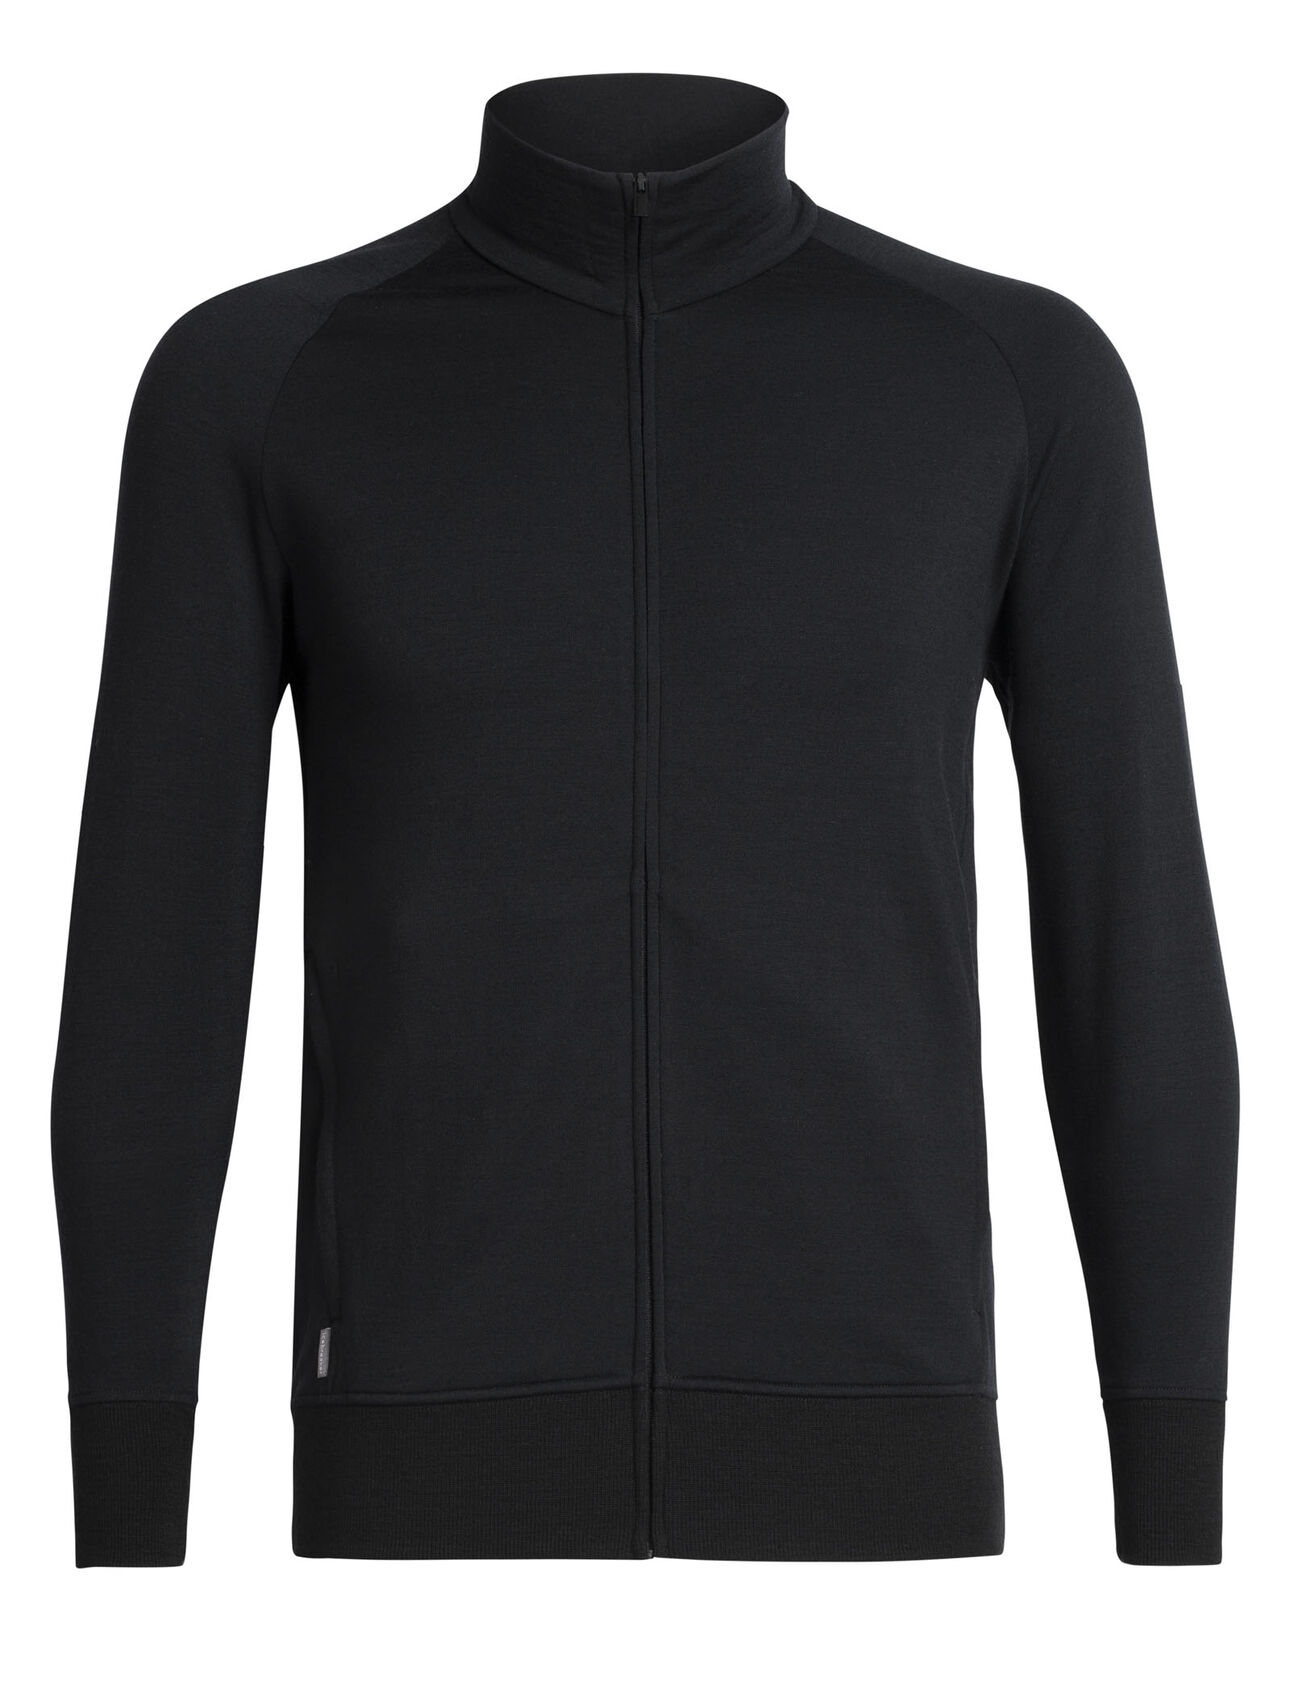 RealFleece® Merino Lydmar Long Sleeve Zip Jacket